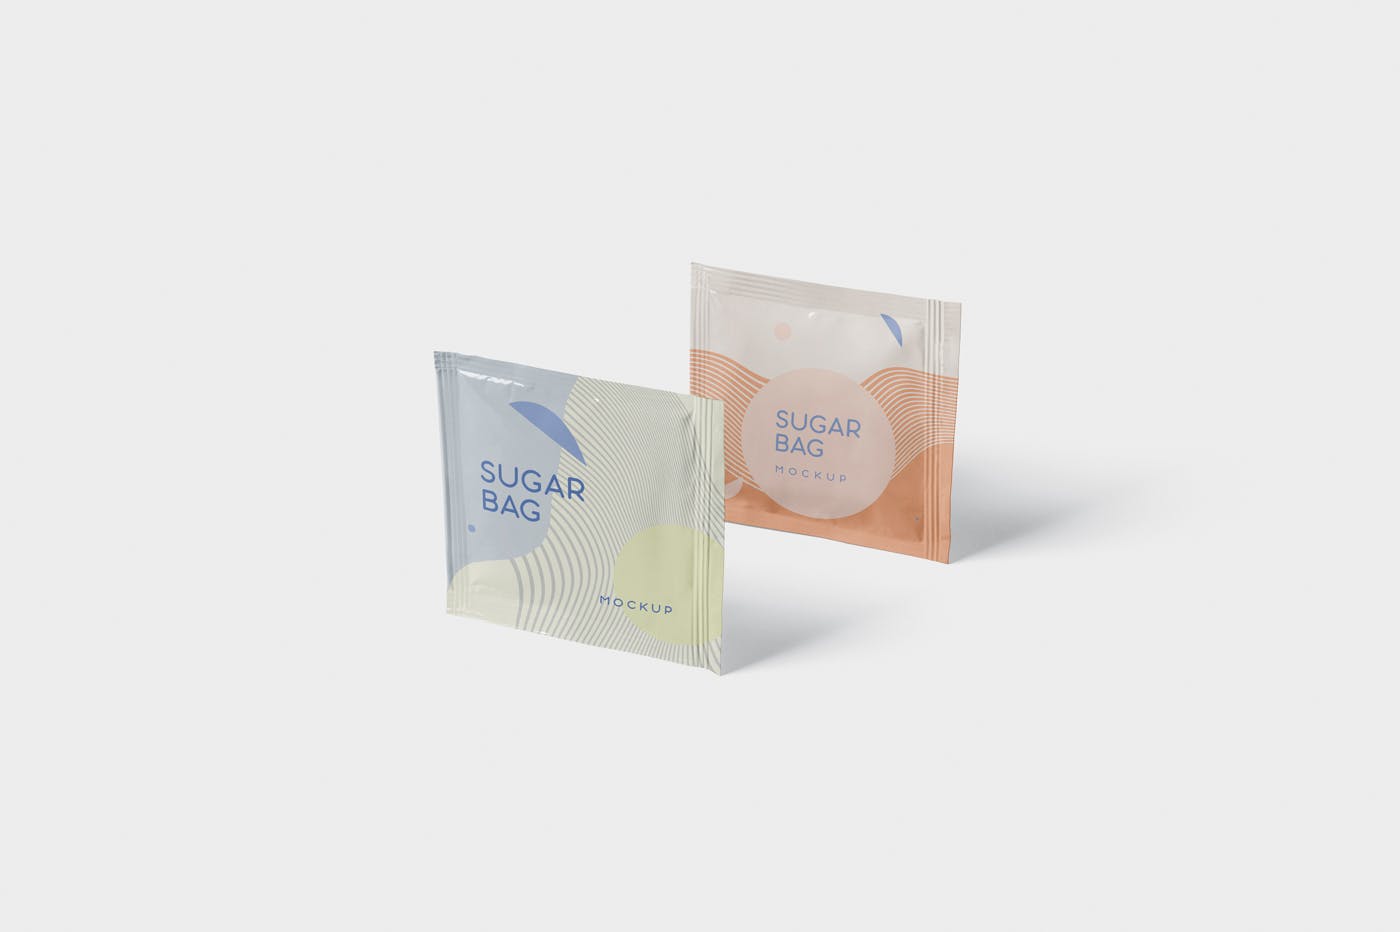 盐袋糖袋包装设计效果图素材库精选 Salt OR Sugar Bag Mockup – Square Shaped插图(3)